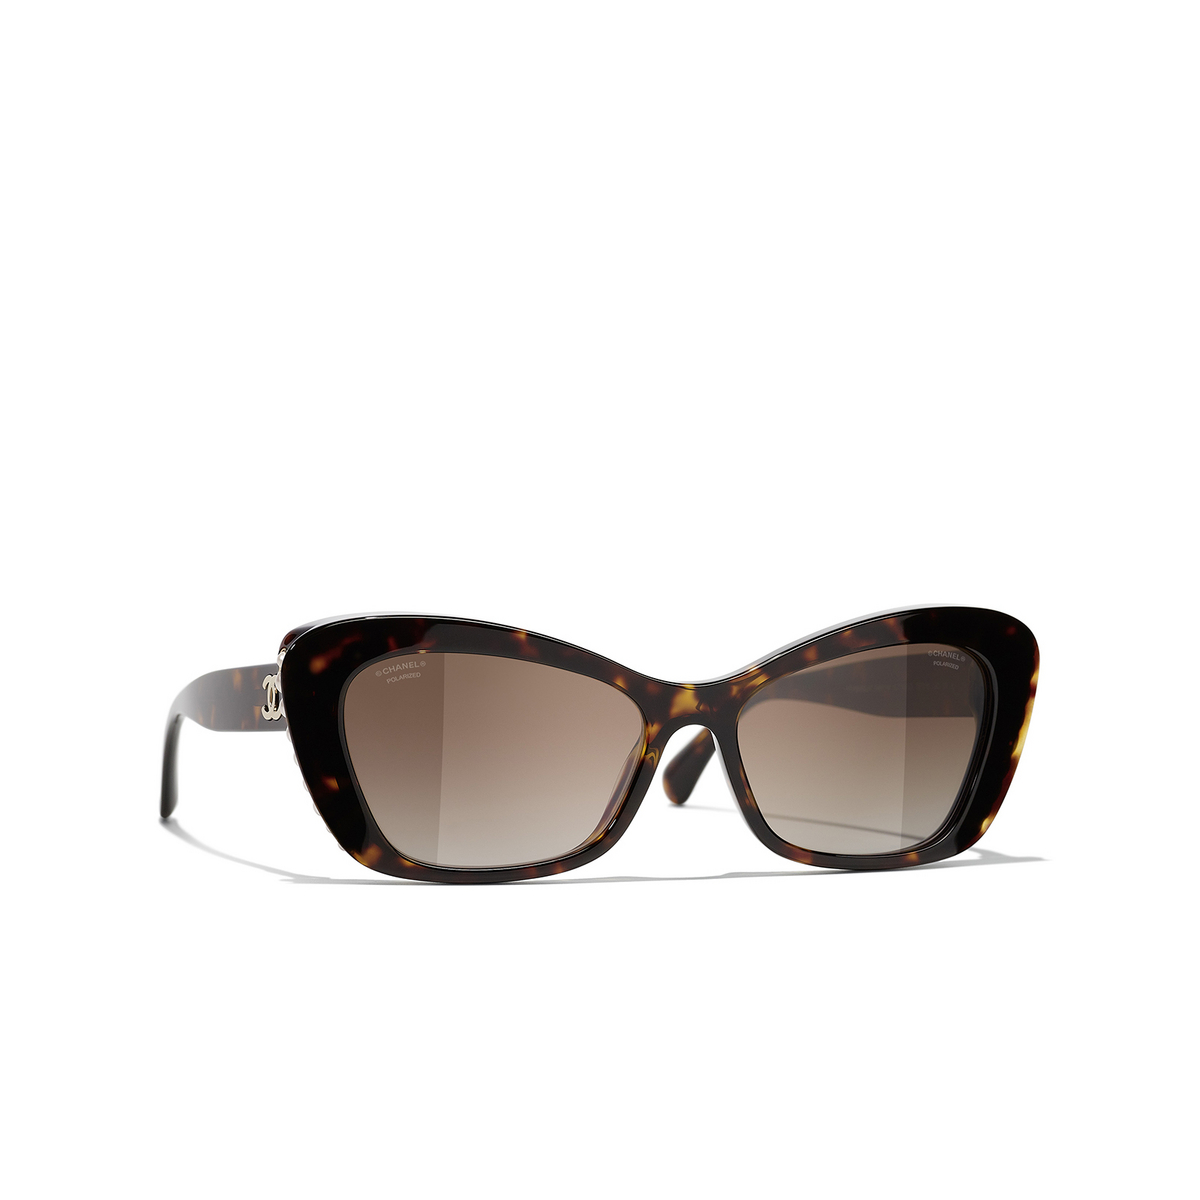 CHANEL cateye Sunglasses C714S9 Dark Tortoise